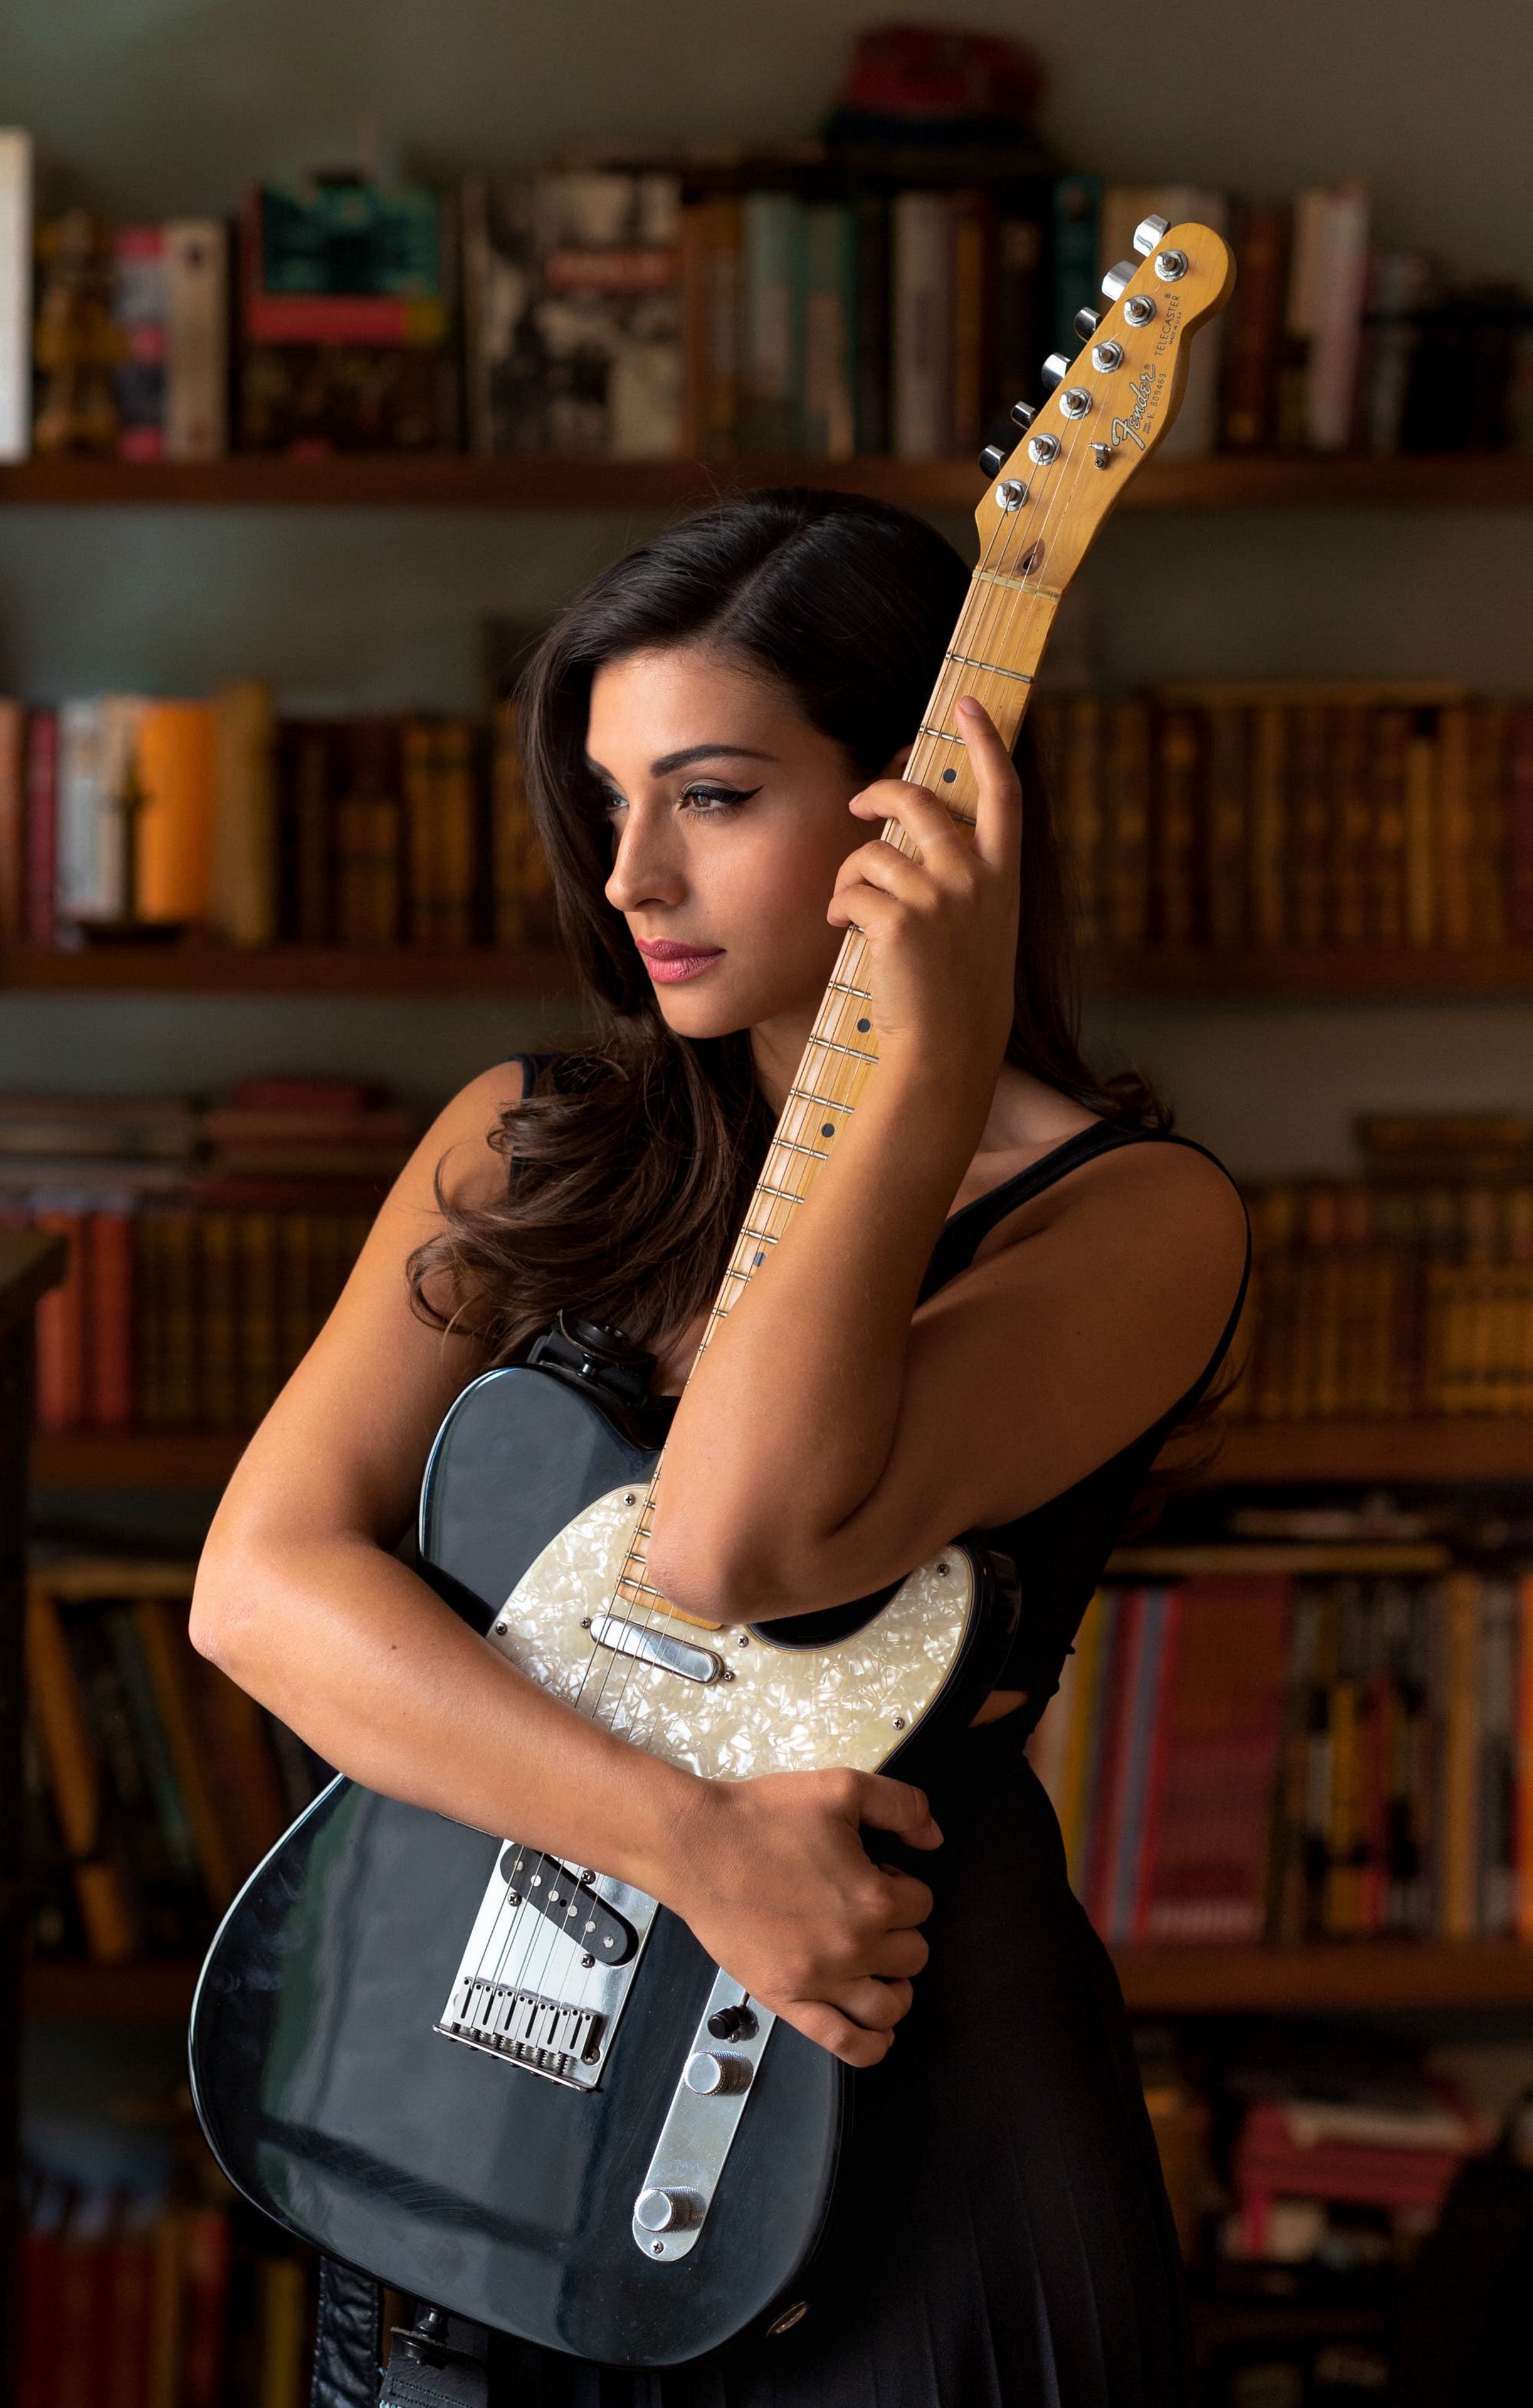 Bilder von Model Gitarre Tess Perrone Mädchens Hand 2445x3840 für Handy junge frau junge Frauen